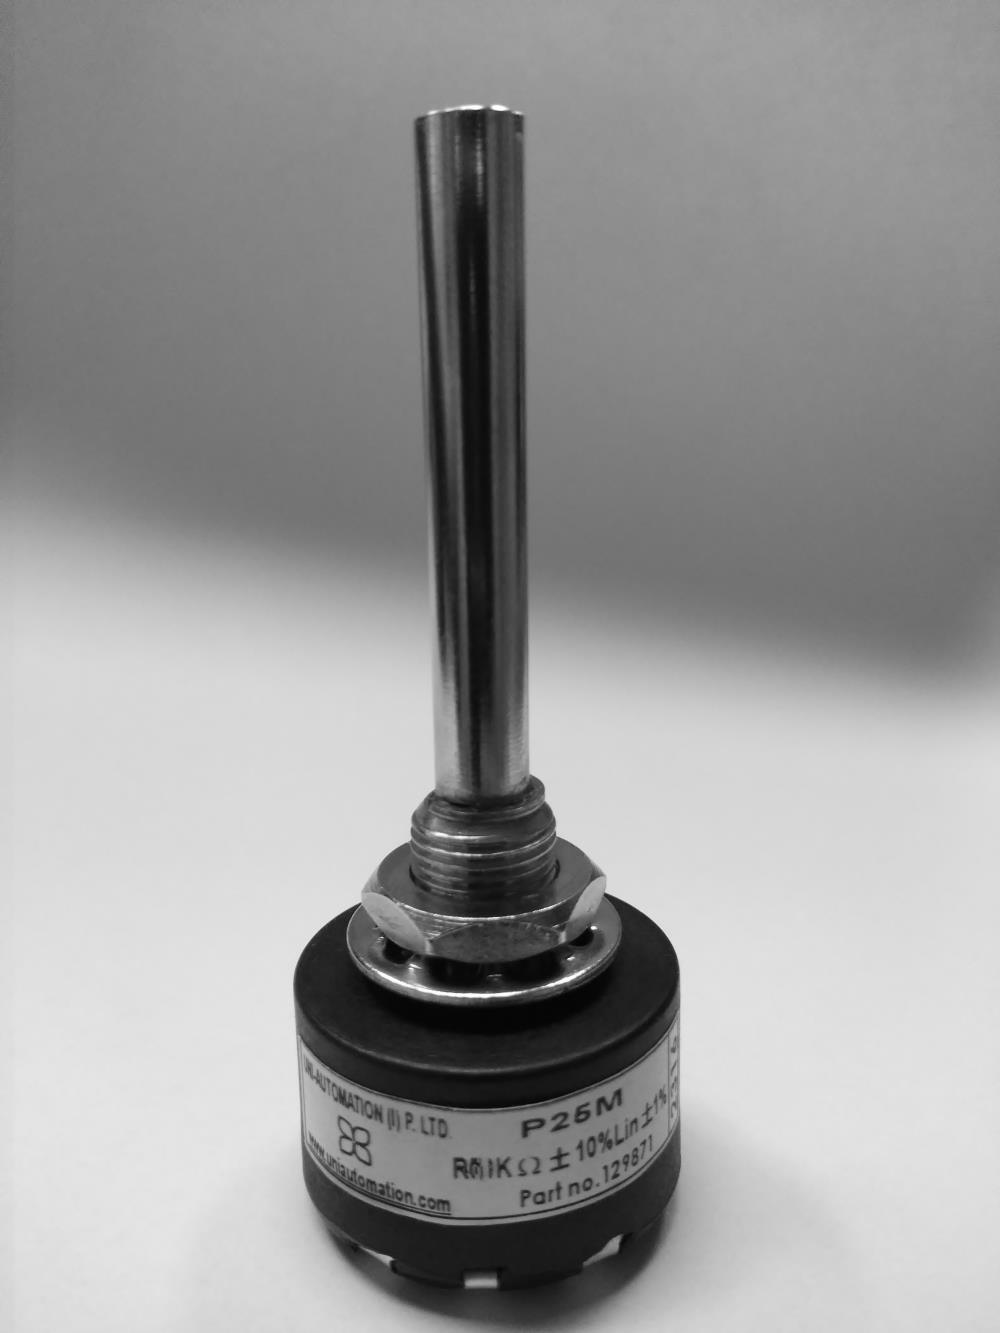 P25M 100OHM (P25M -Tel Sarımlı Potansiyometre-5)